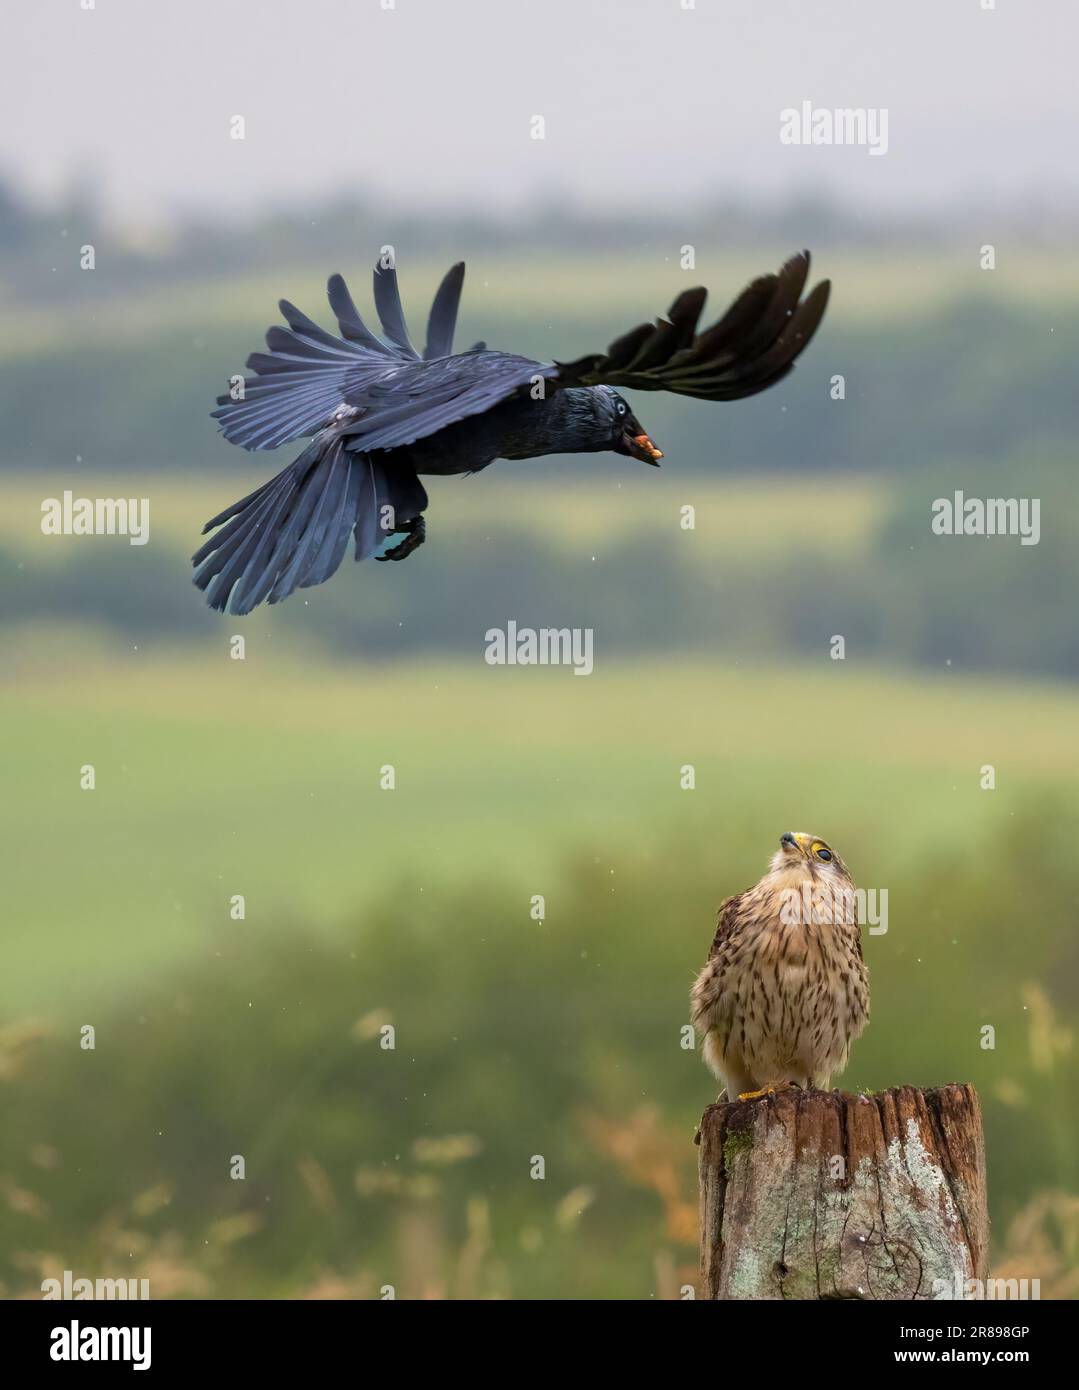 Ein weibliches Kestrel (Falco tinnunculus), duckt sich wie ein aggressiver Jackdaw (Corvus monedula), der auf bedrohliche Weise auf ihn zufliegt Stockfoto